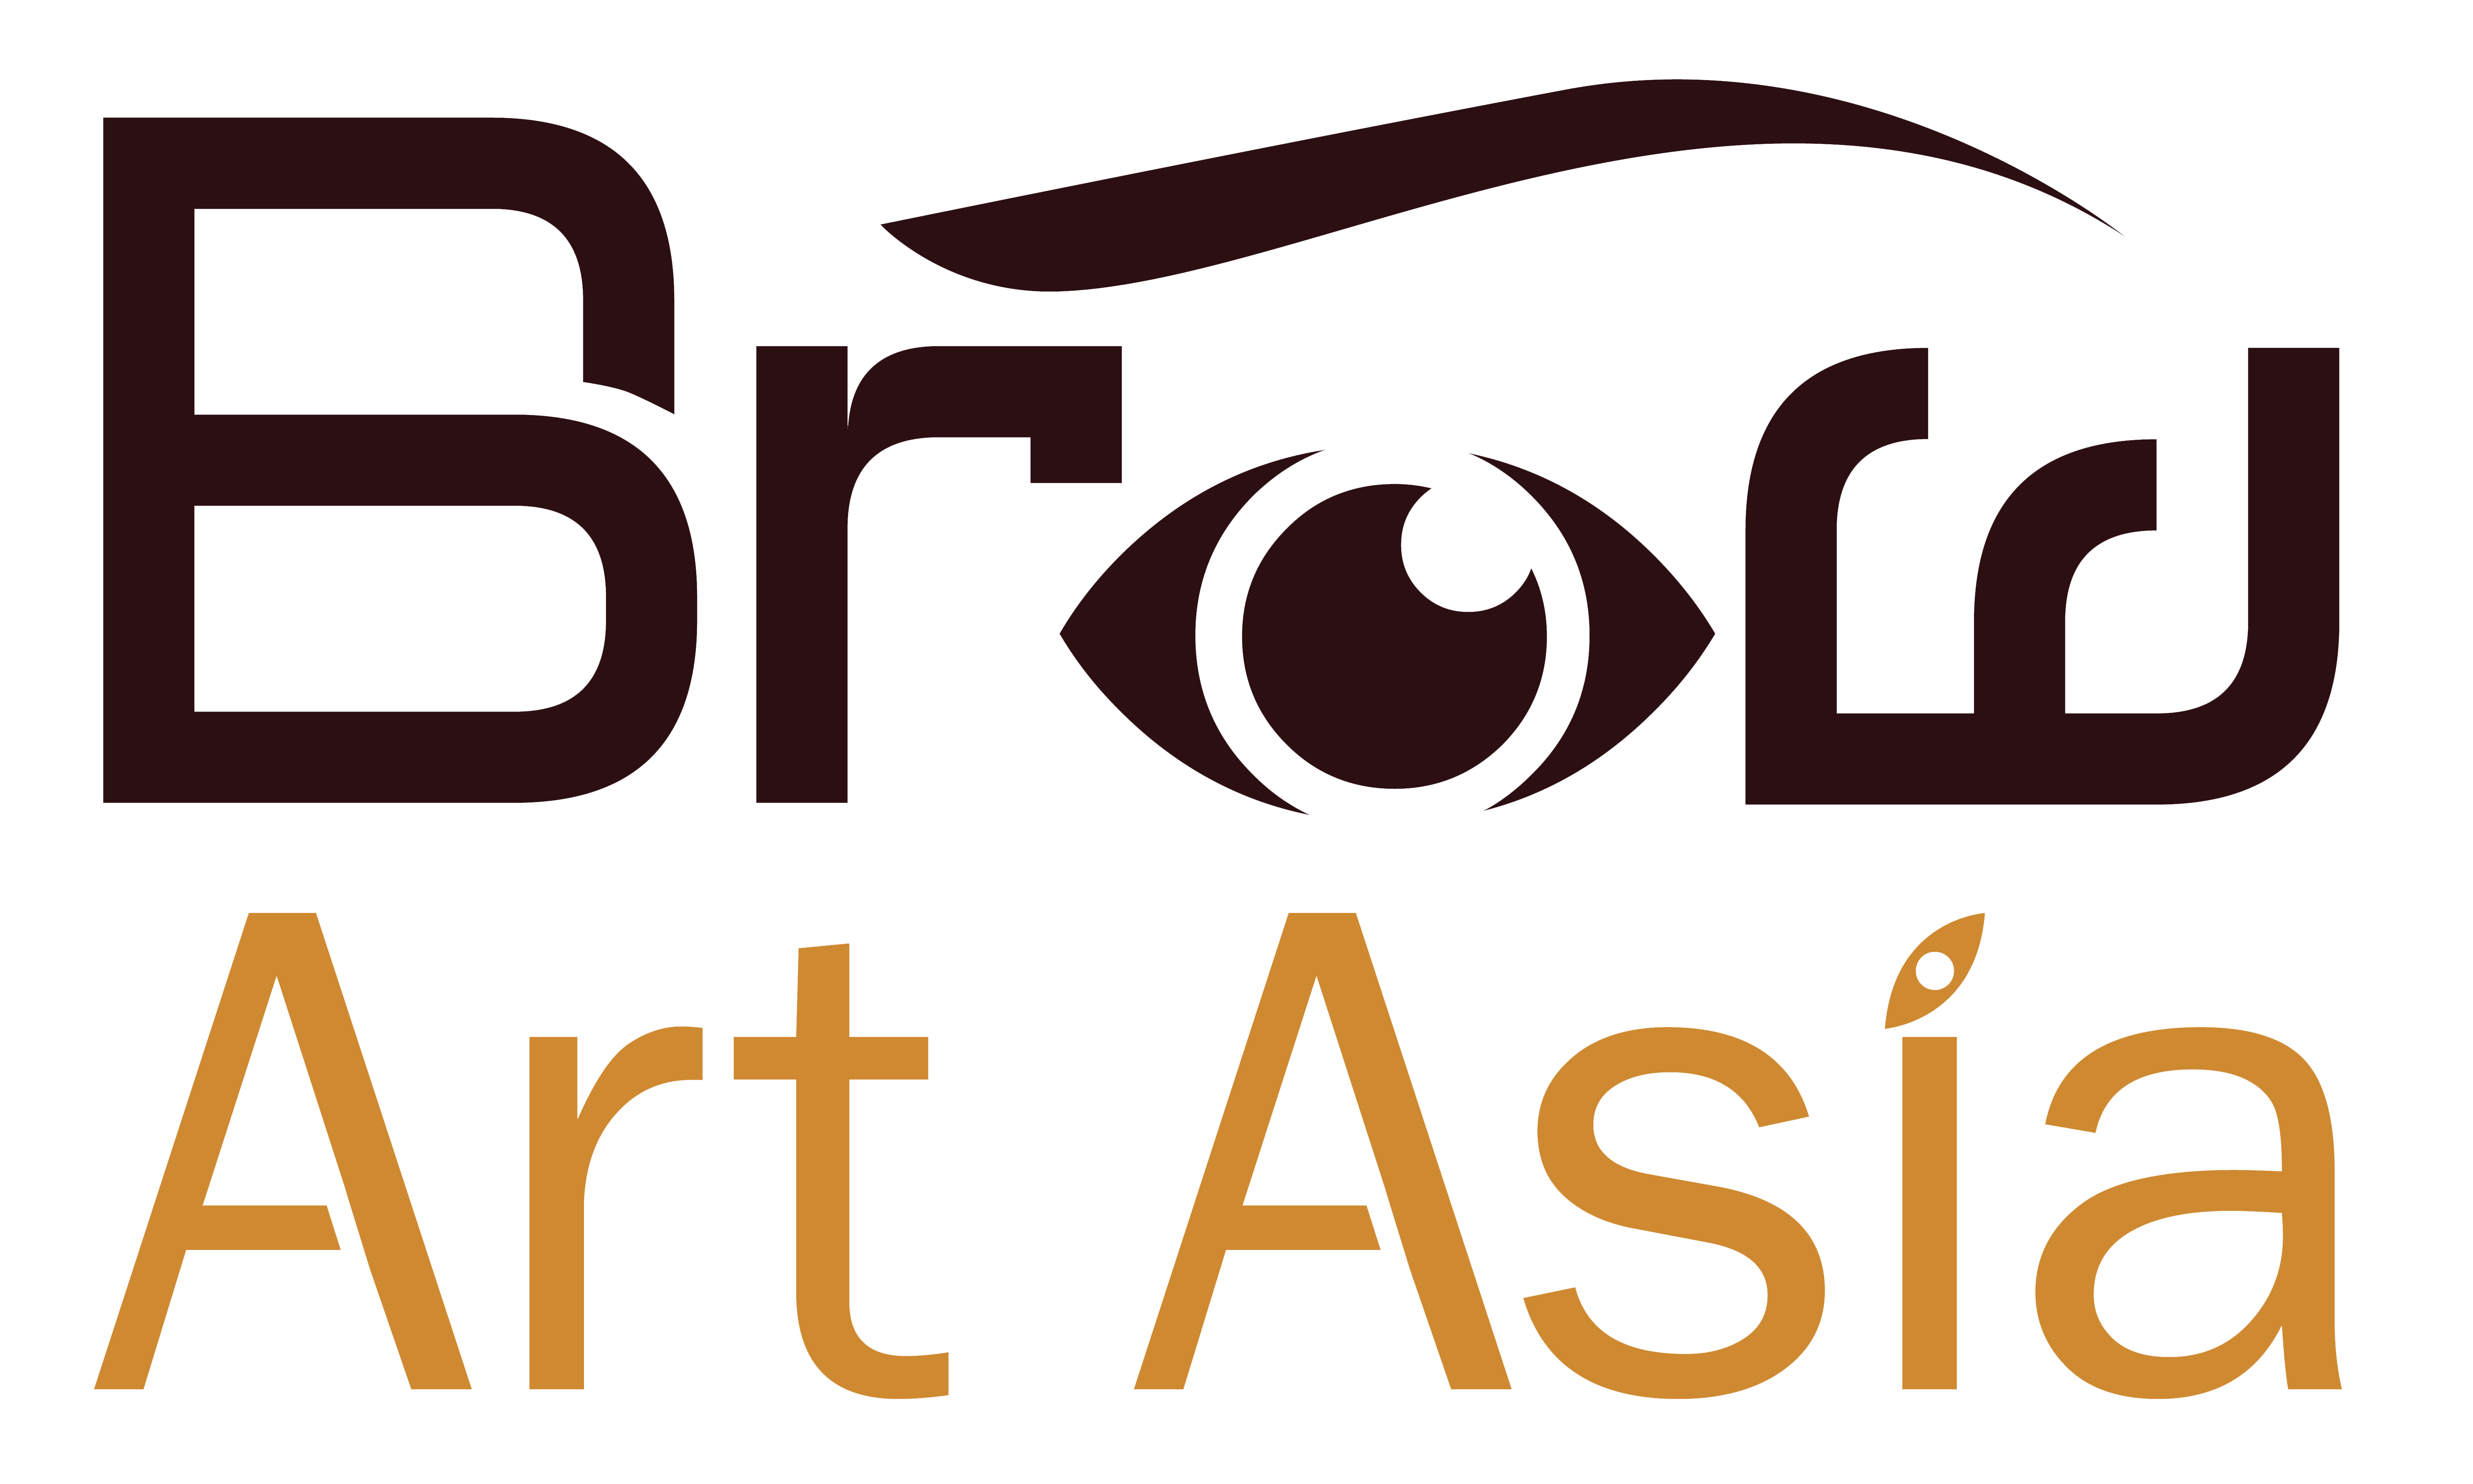 Brow Art Asia